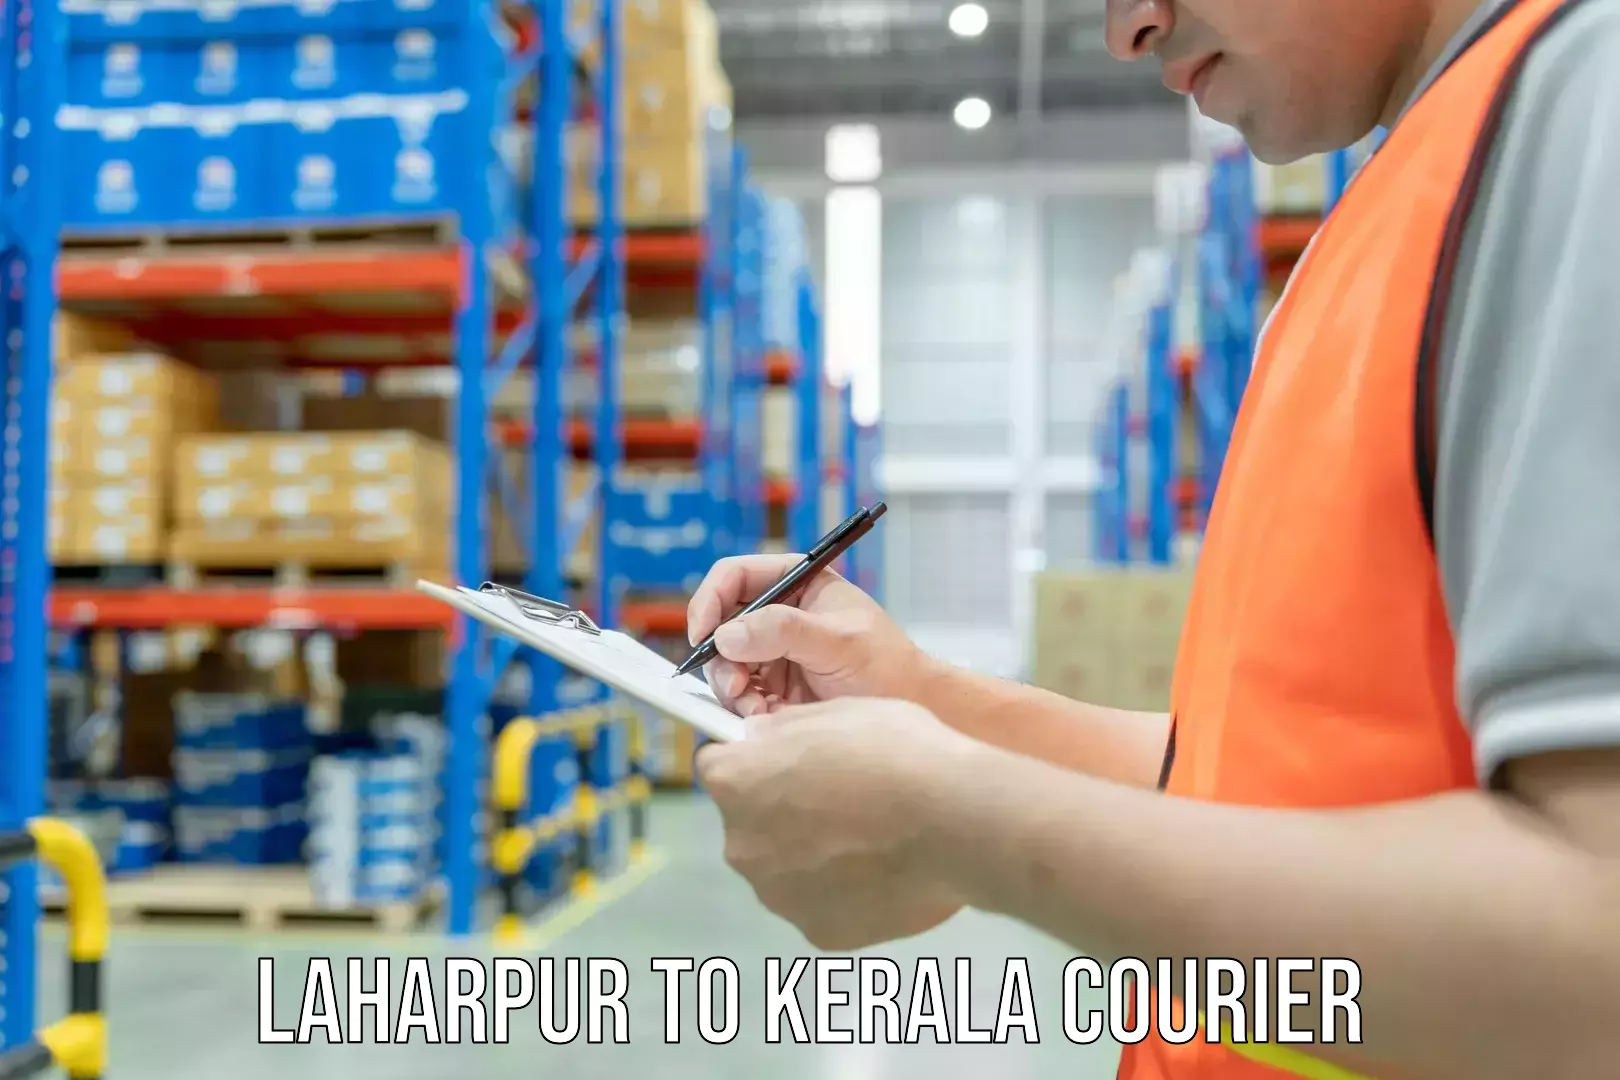 Home goods moving Laharpur to Kerala